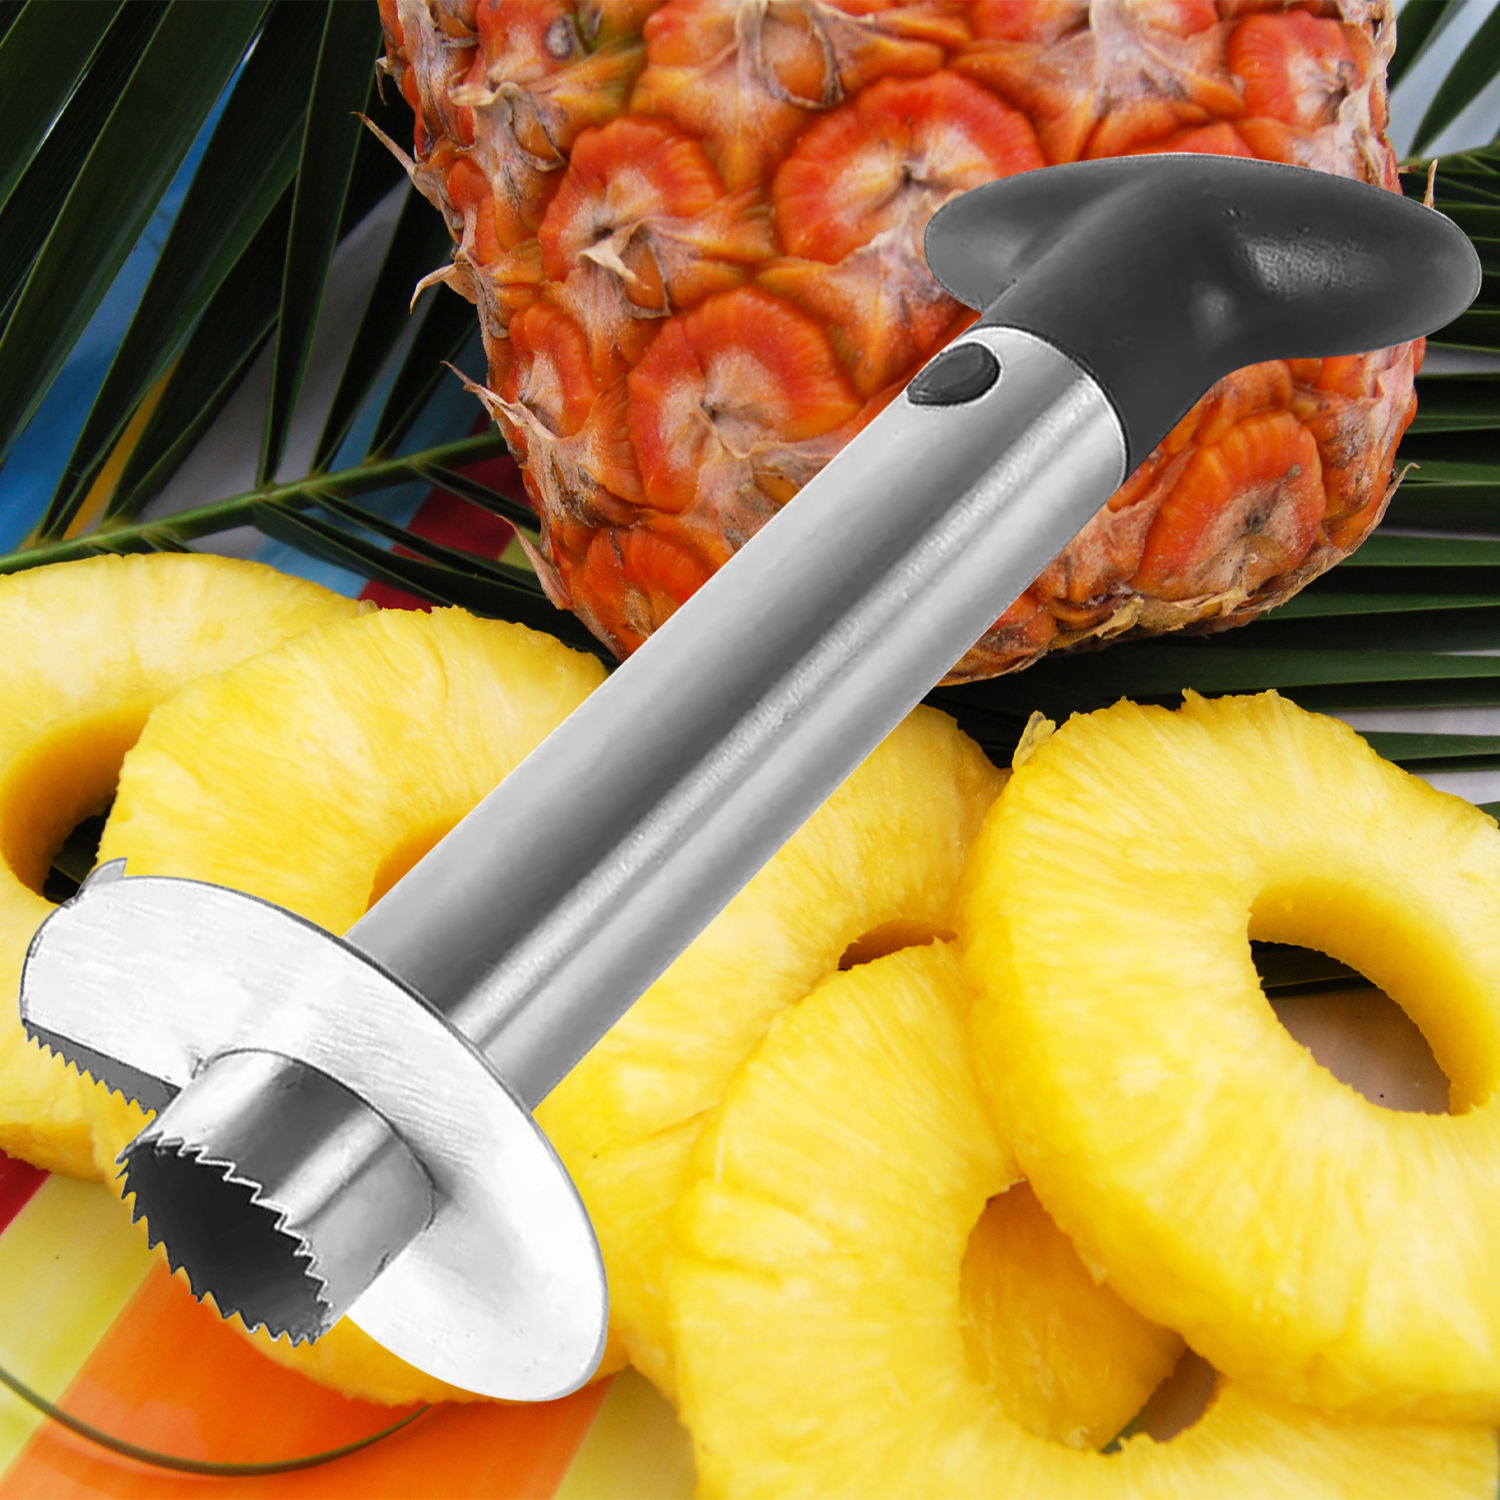 1 Uds. Descorazonador y rebanador de piña de acero inoxidable, herramientas de extracción de núcleo de fruta, utensilio de cocina para el hogar